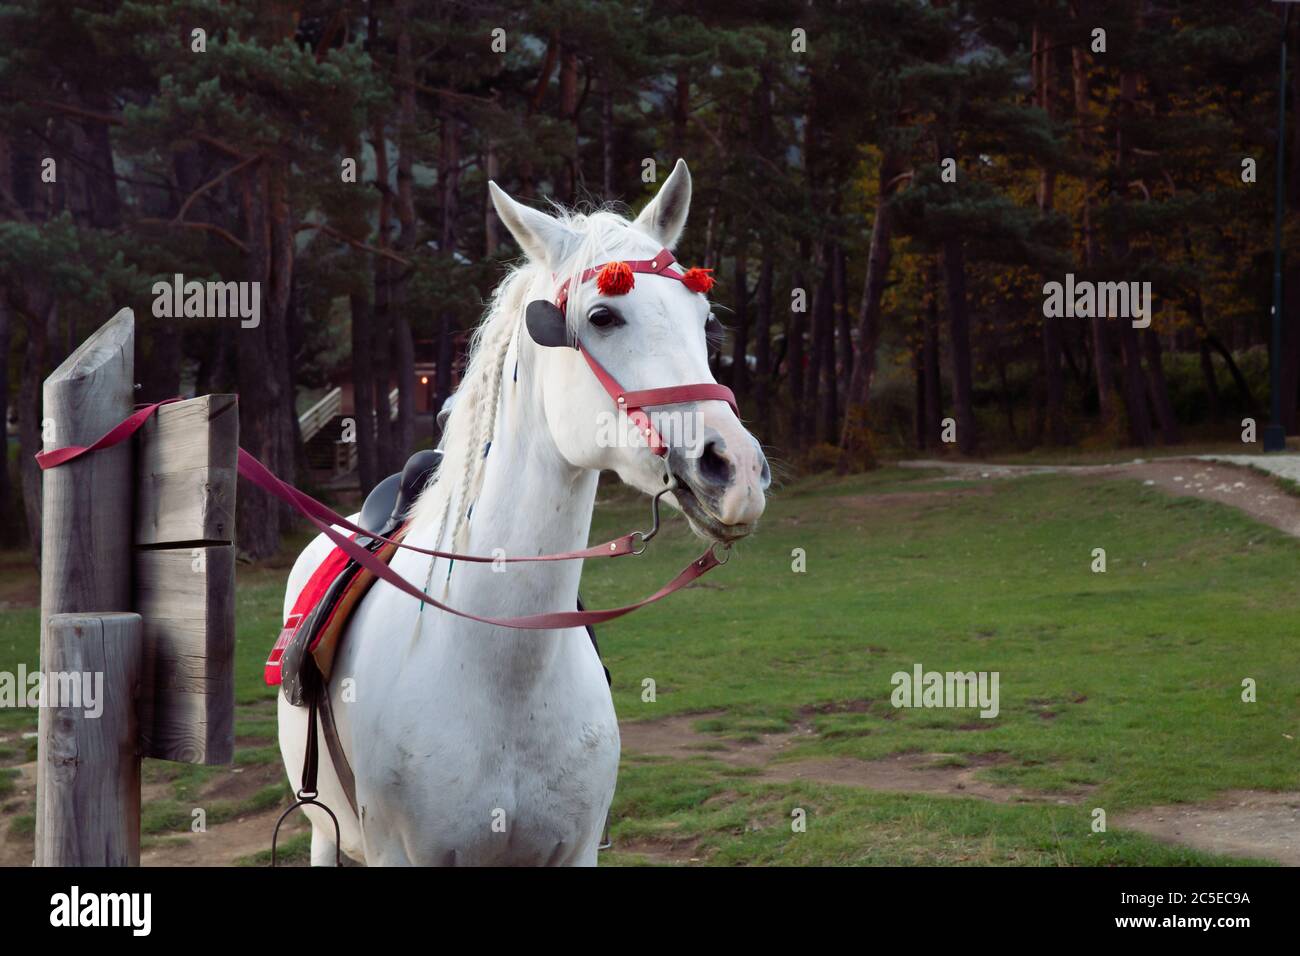 Un beau cheval blanc portant une bride rouge avec des ornements sur son bracelet marron, attaché à un panneau en bois dans une forêt, Abant Lake, Turquie Banque D'Images